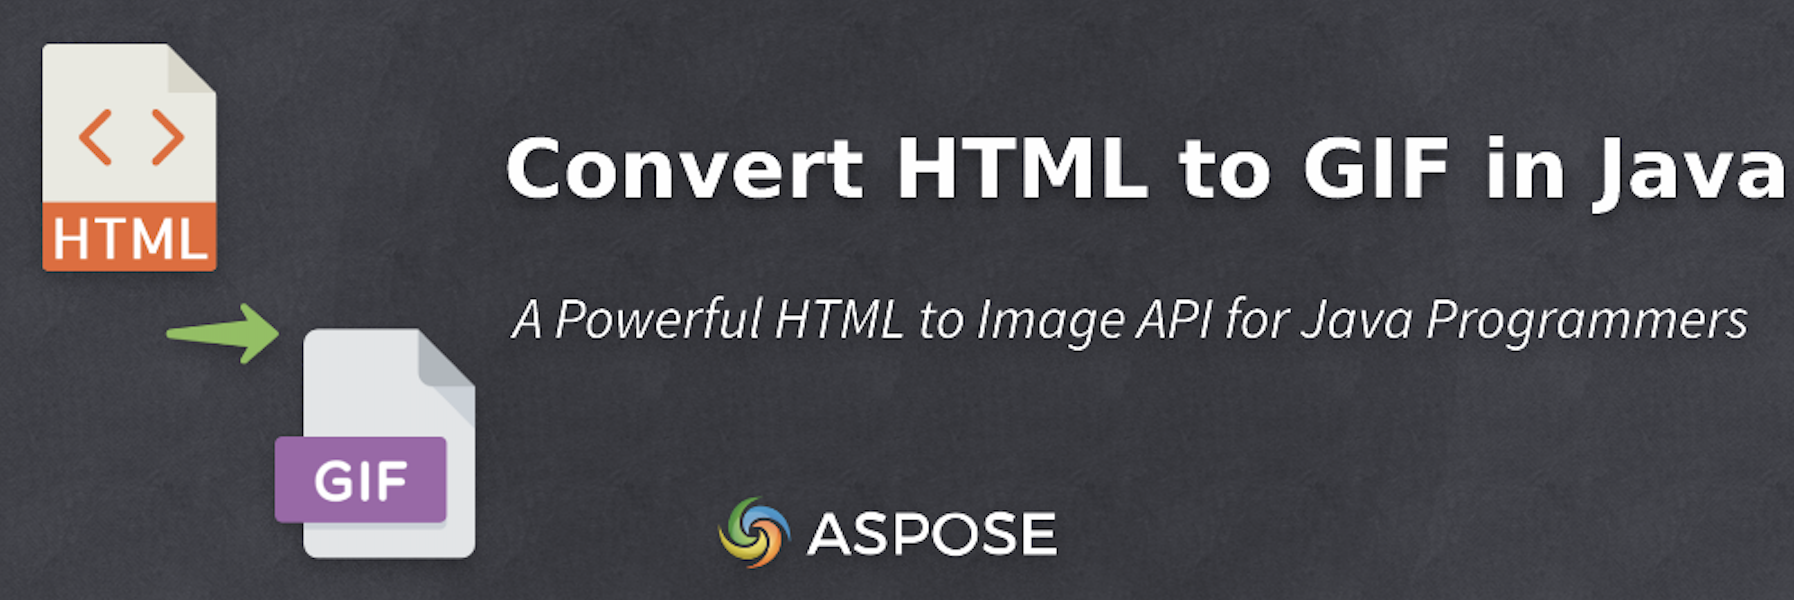 HTML programmgesteuert in Java in GIF konvertieren